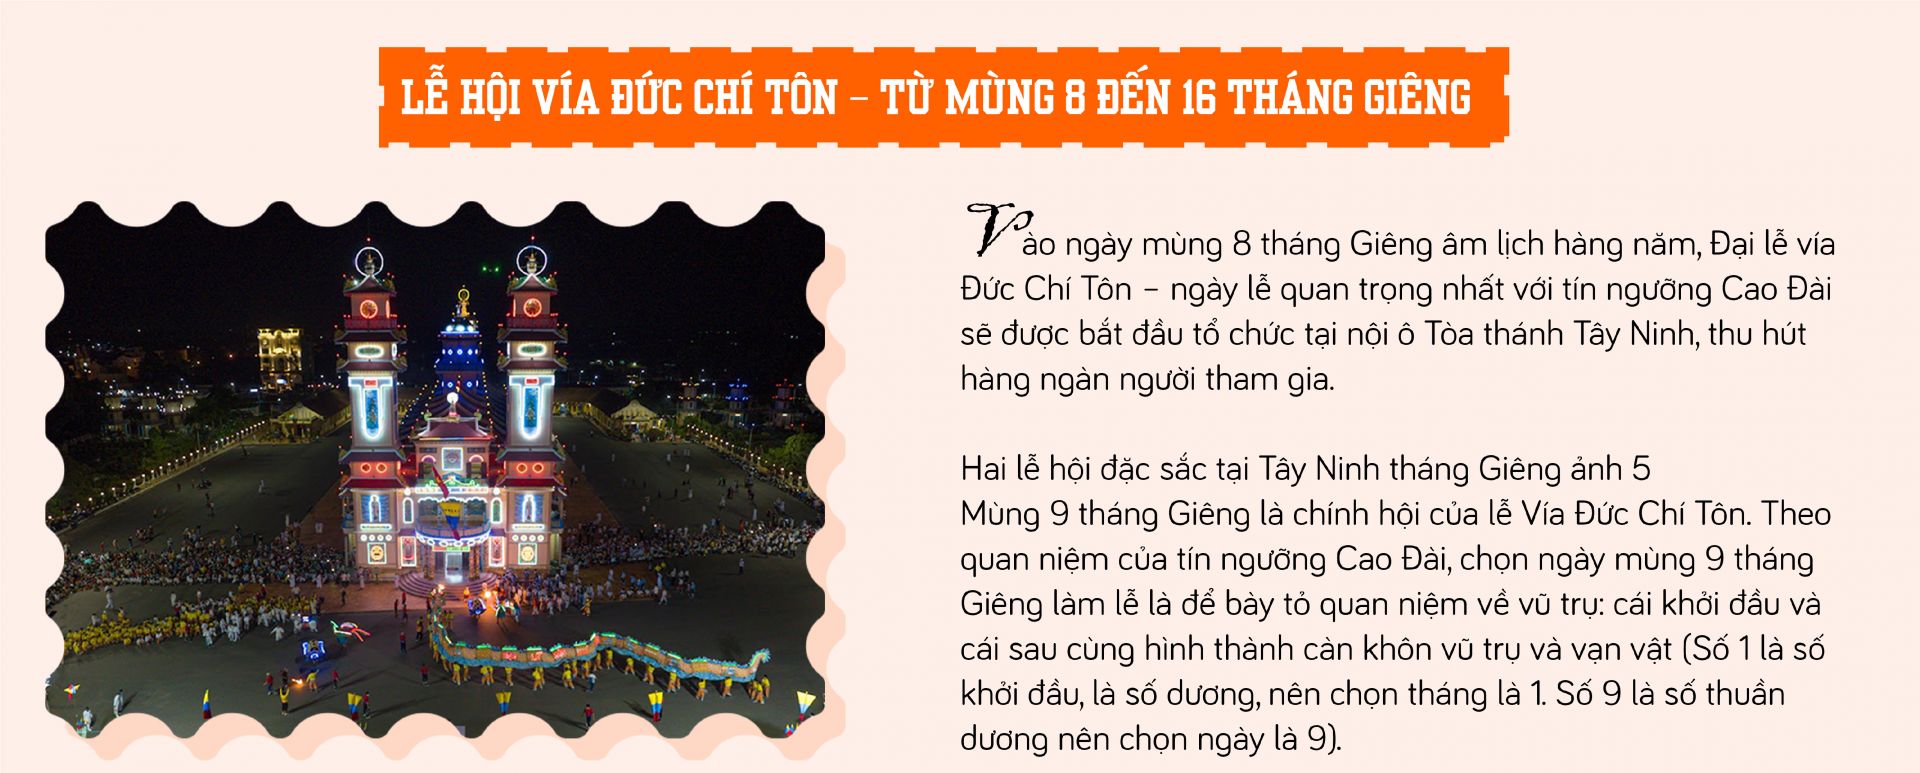 Hai lễ hội đặc sắc tại Tây Ninh tháng Giêng